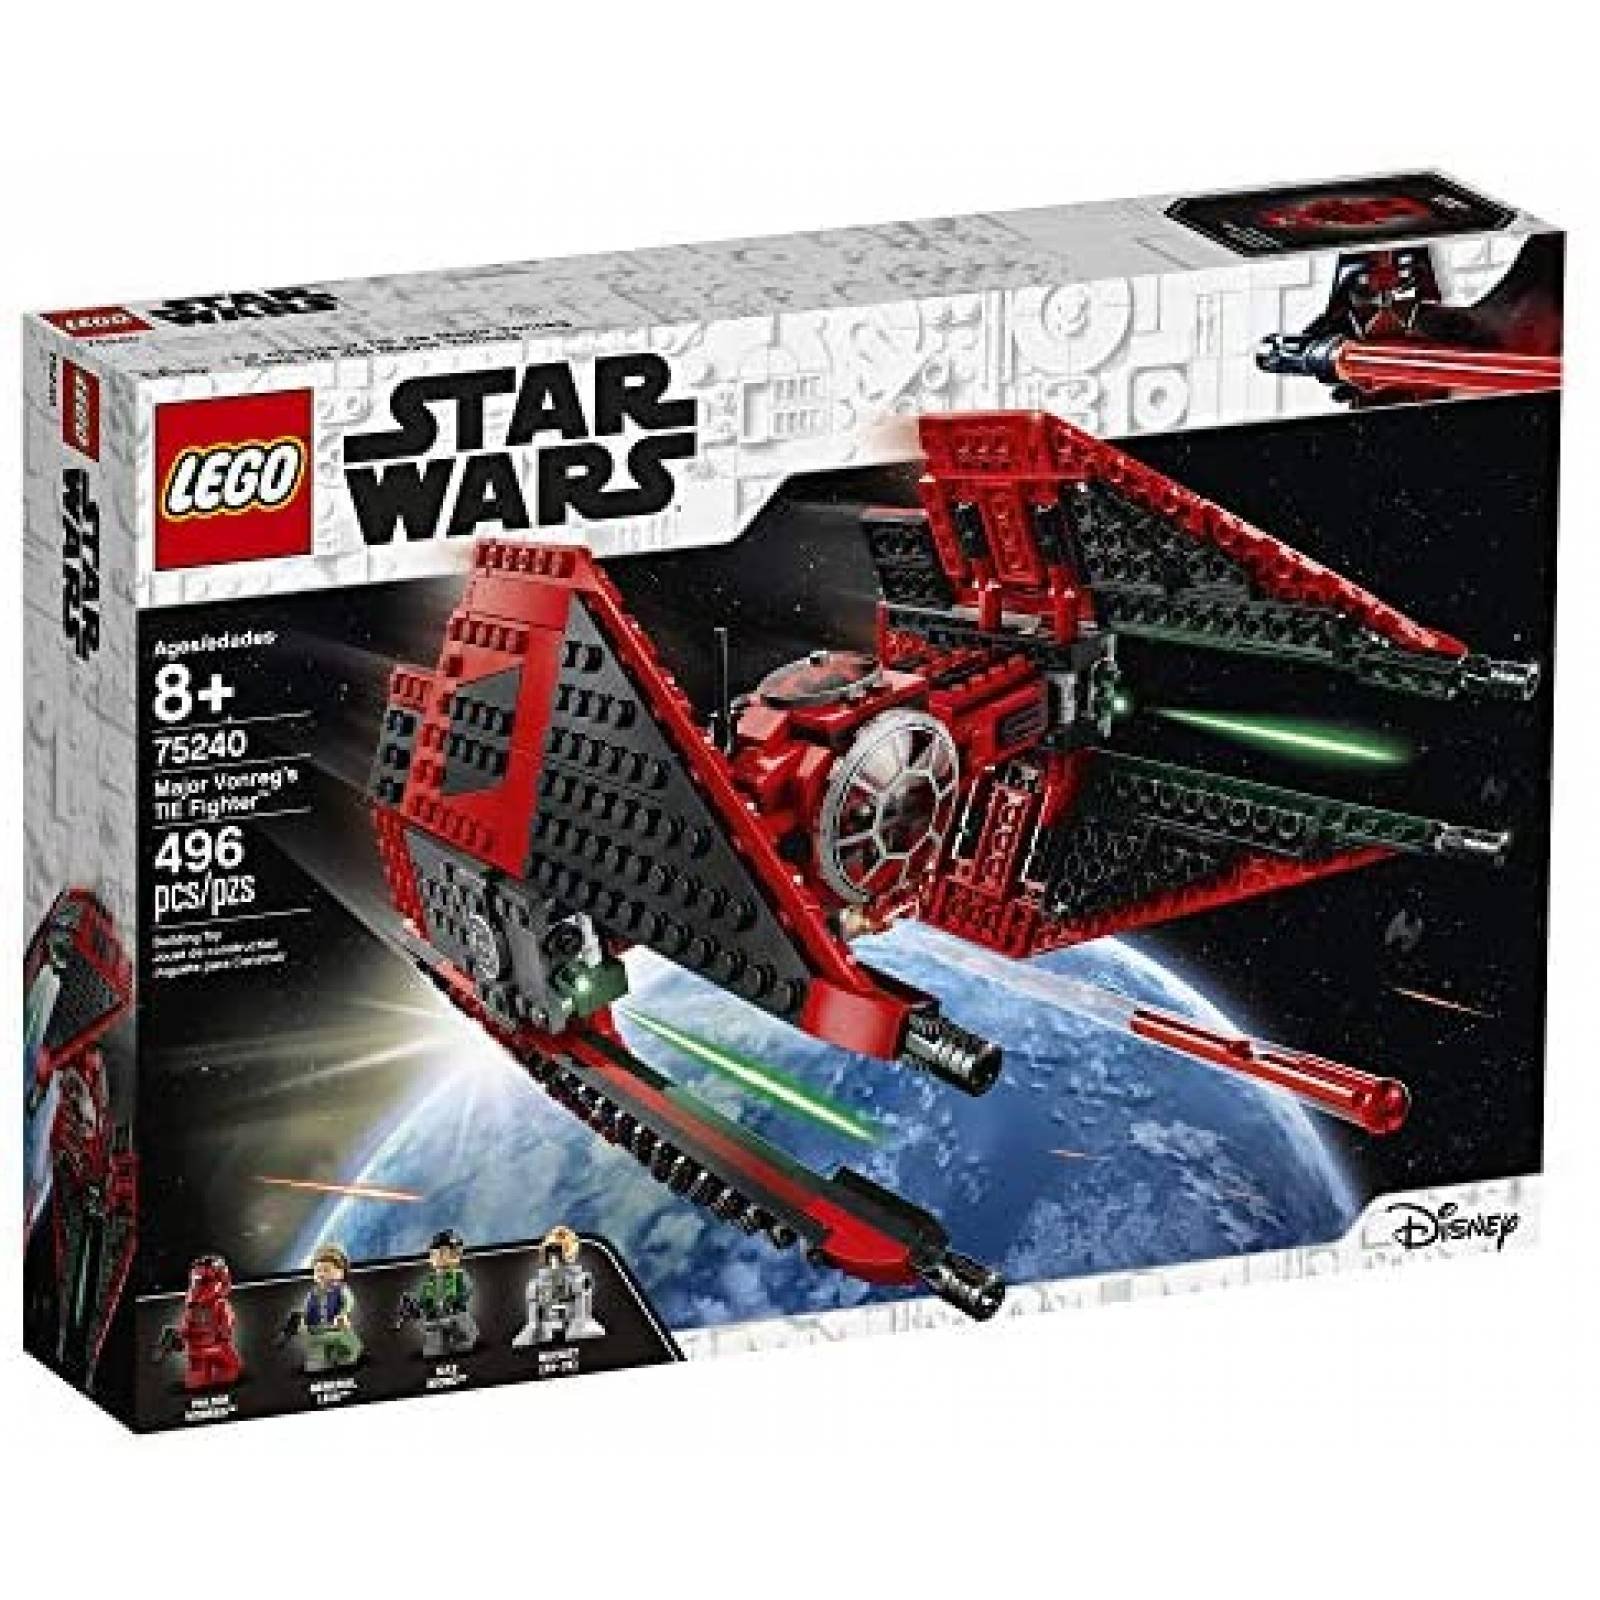 Set de Construcción LEGO Star Wars Resistance Major 496 Pzs